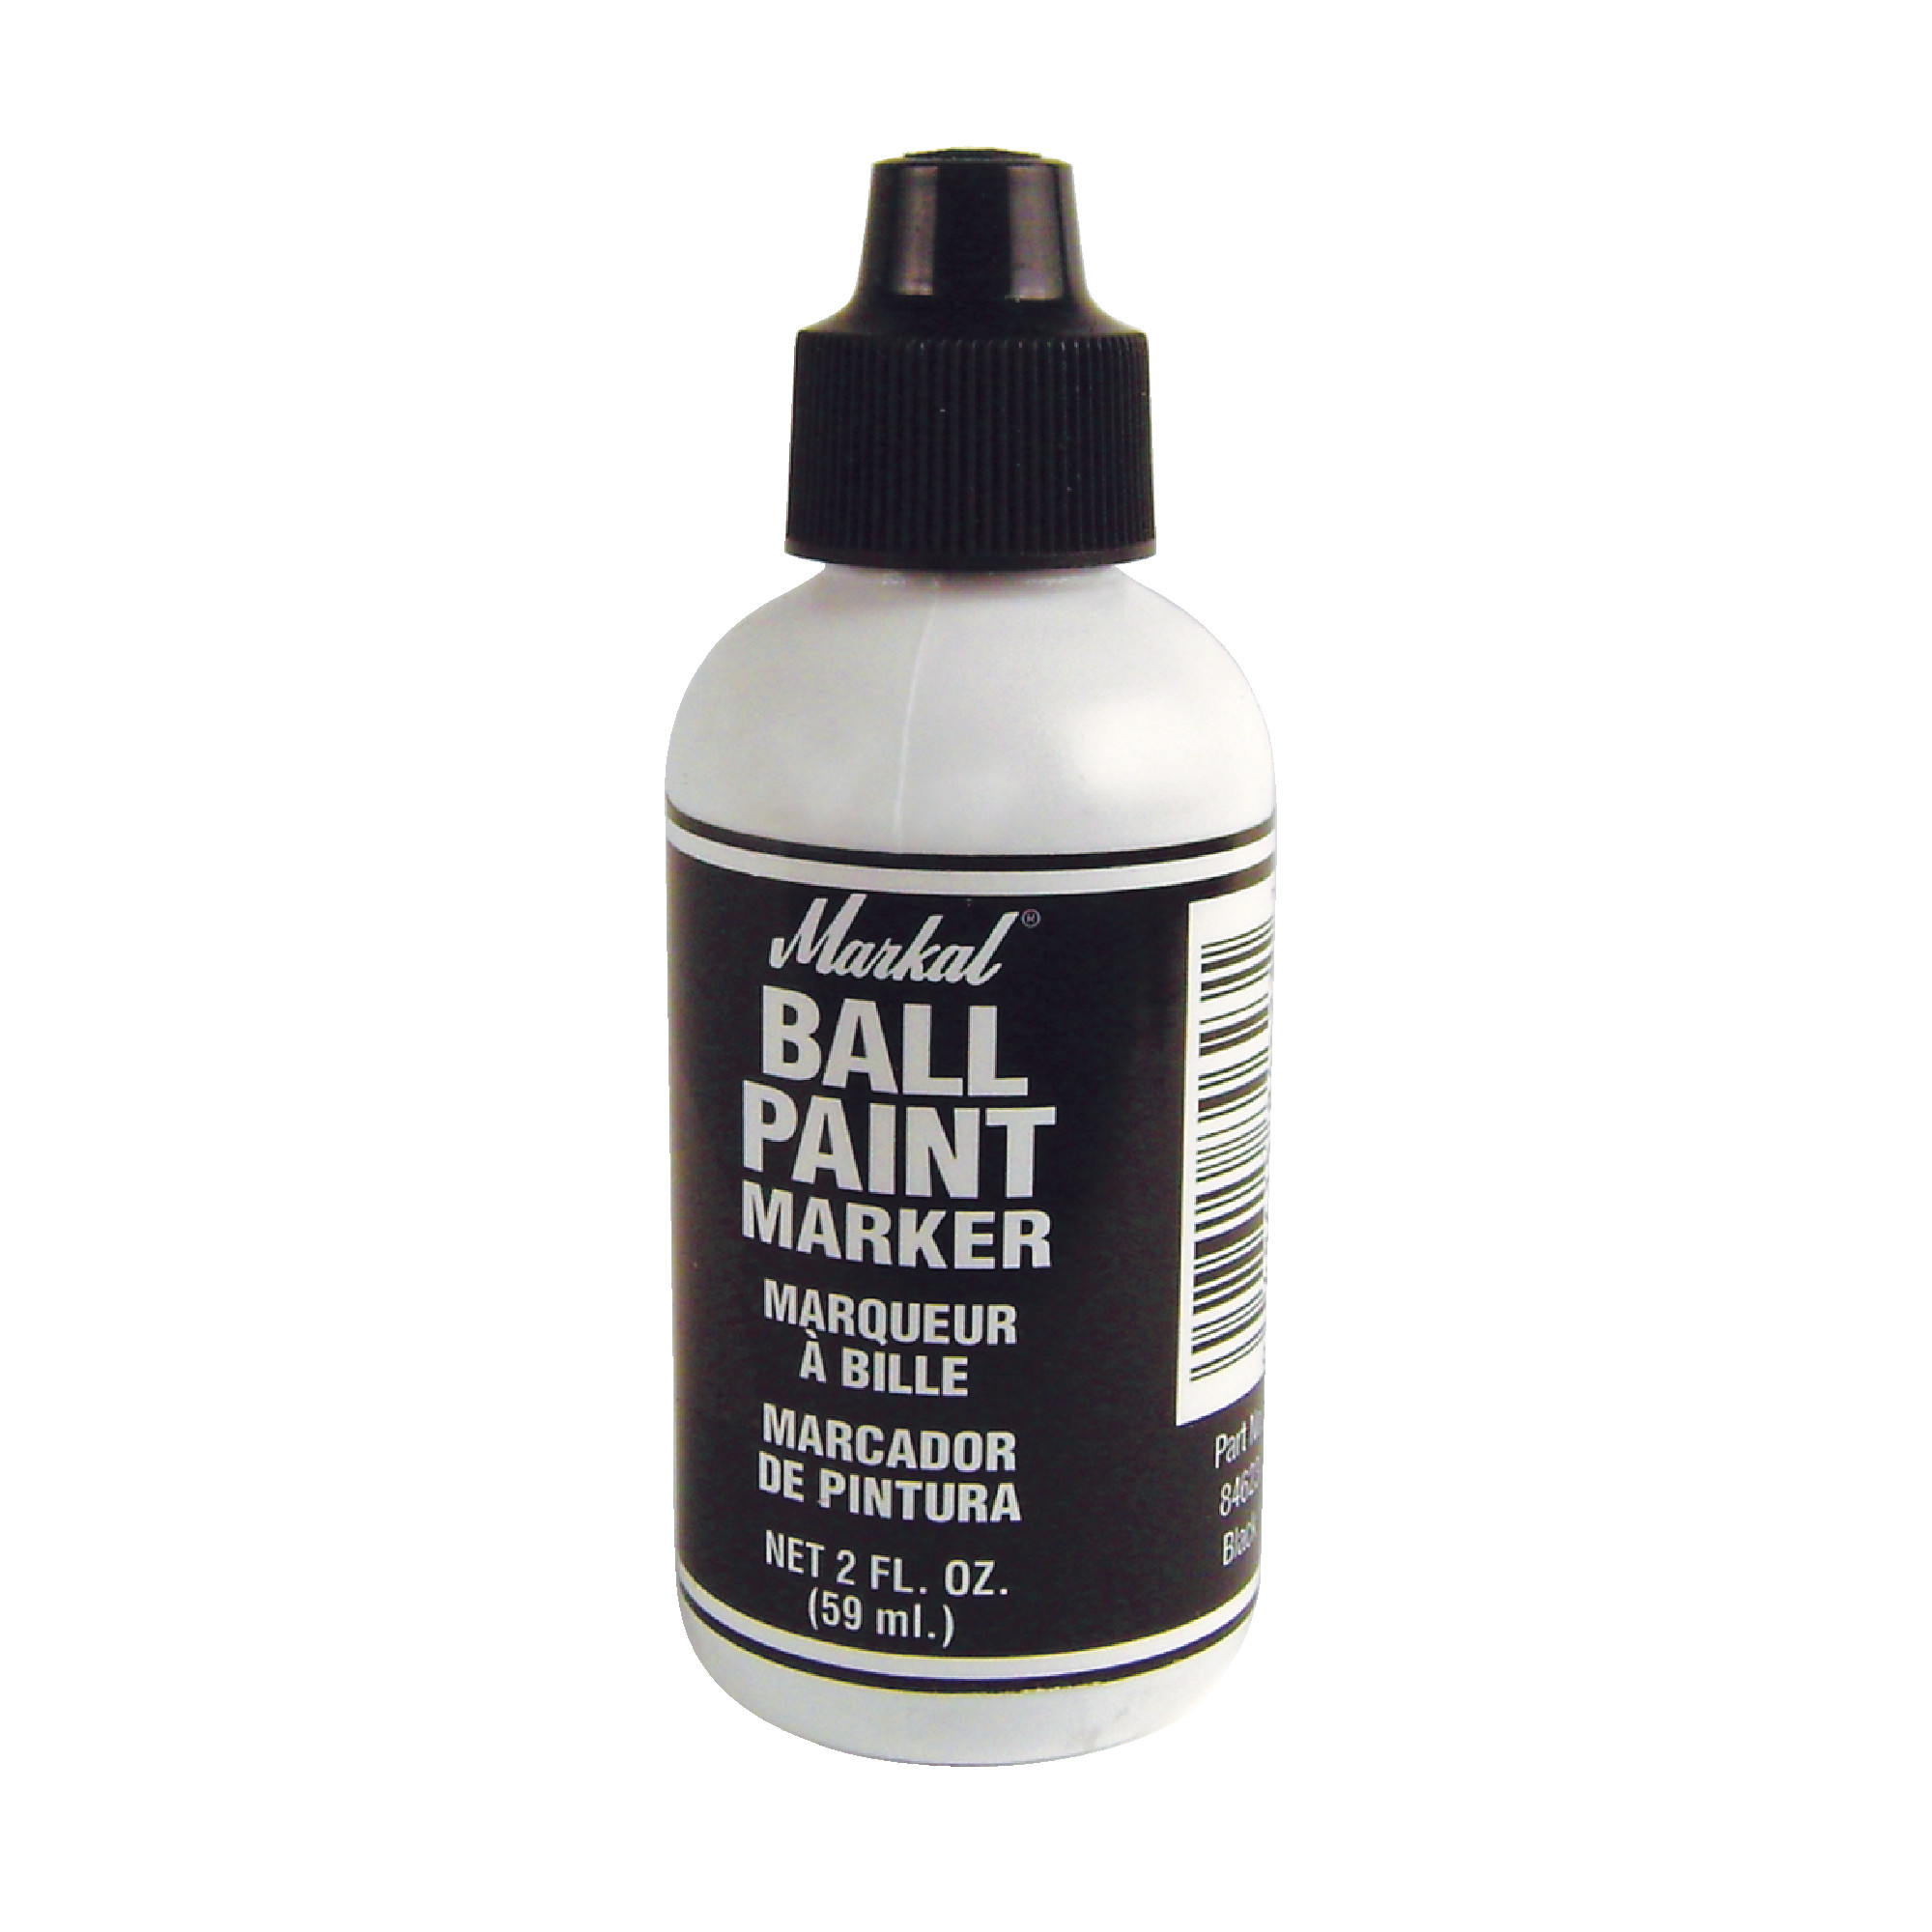 Ball Paint Marker